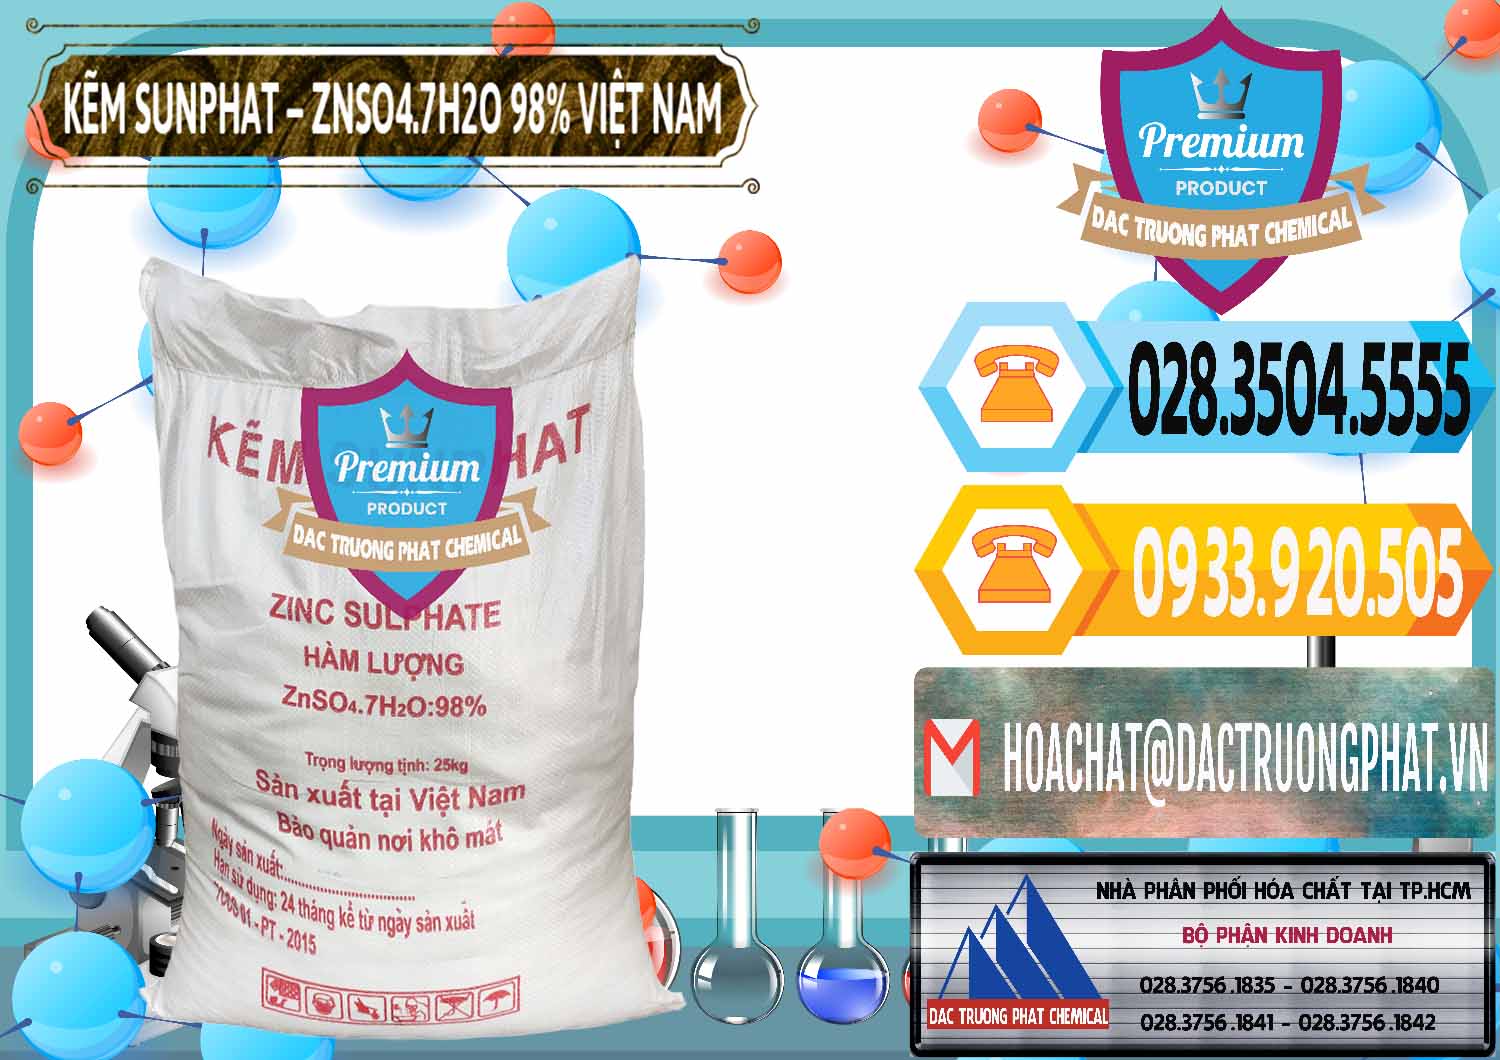 Cung cấp và phân phối Kẽm Sunfat – ZNSO4.7H2O Việt Nam - 0189 - Công ty kinh doanh và phân phối hóa chất tại TP.HCM - hoachattayrua.net